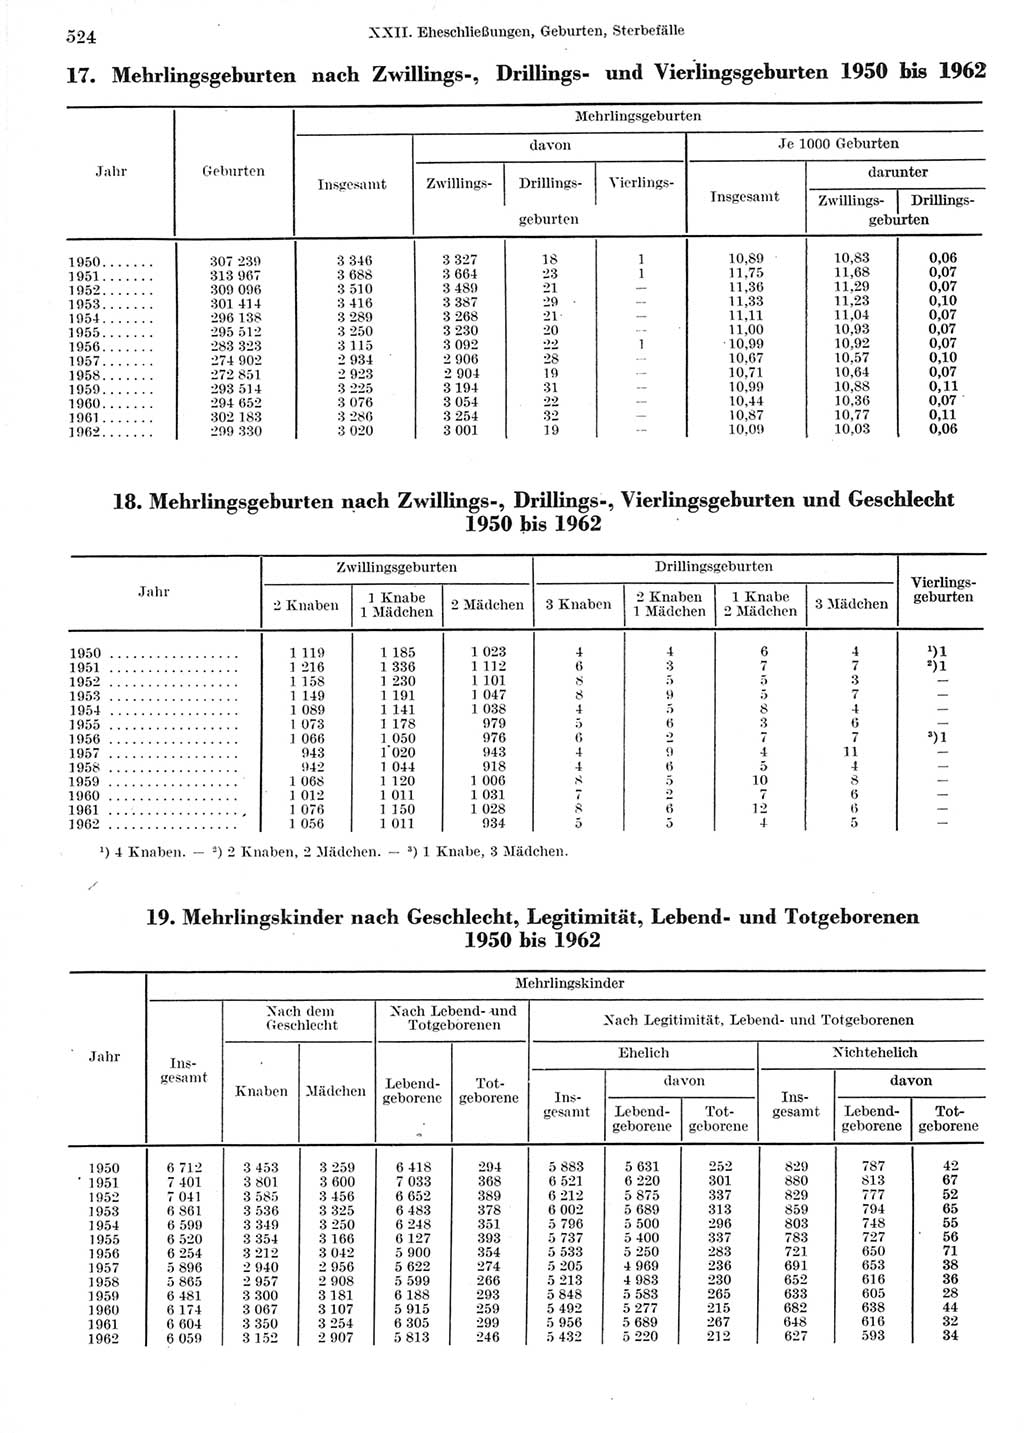 Statistisches Jahrbuch der Deutschen Demokratischen Republik (DDR) 1964, Seite 524 (Stat. Jb. DDR 1964, S. 524)